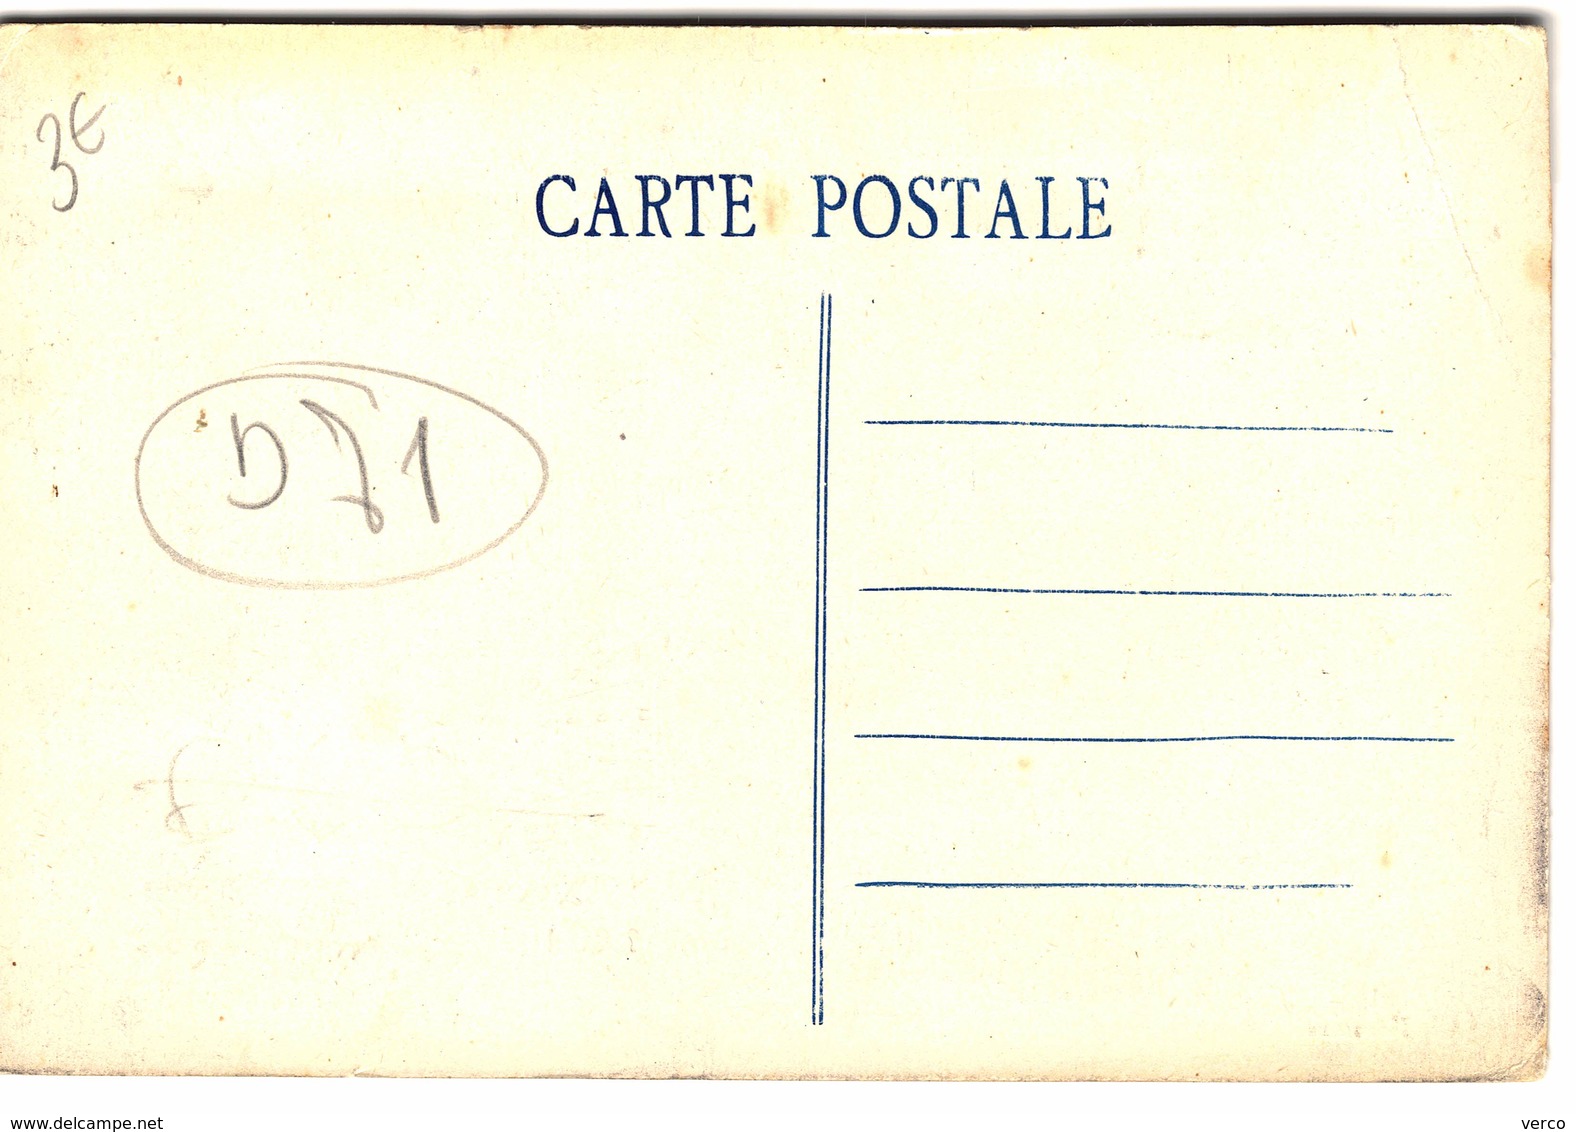 Carte Postale Ancienne De SENNECEY Le GRAND - Hotel PARIS NICE, Propriétaire F.BLONDEAU - Altri & Non Classificati